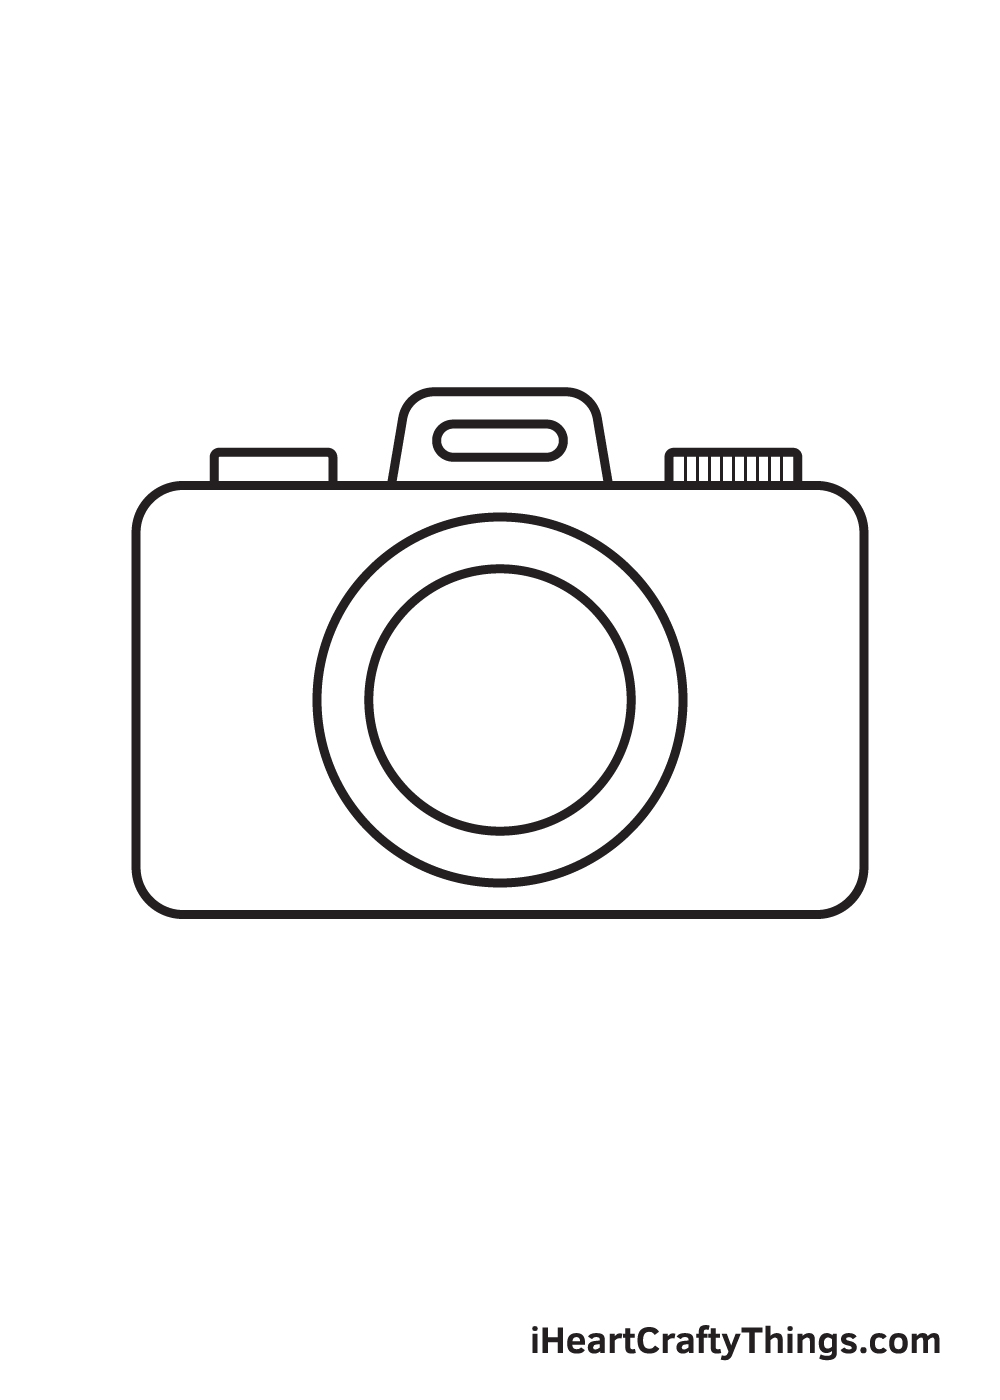 Camera DRAWING – STEP 7 - 9 Bước cơ bản thực hiện vẽ máy ảnh đẹp đơn giản